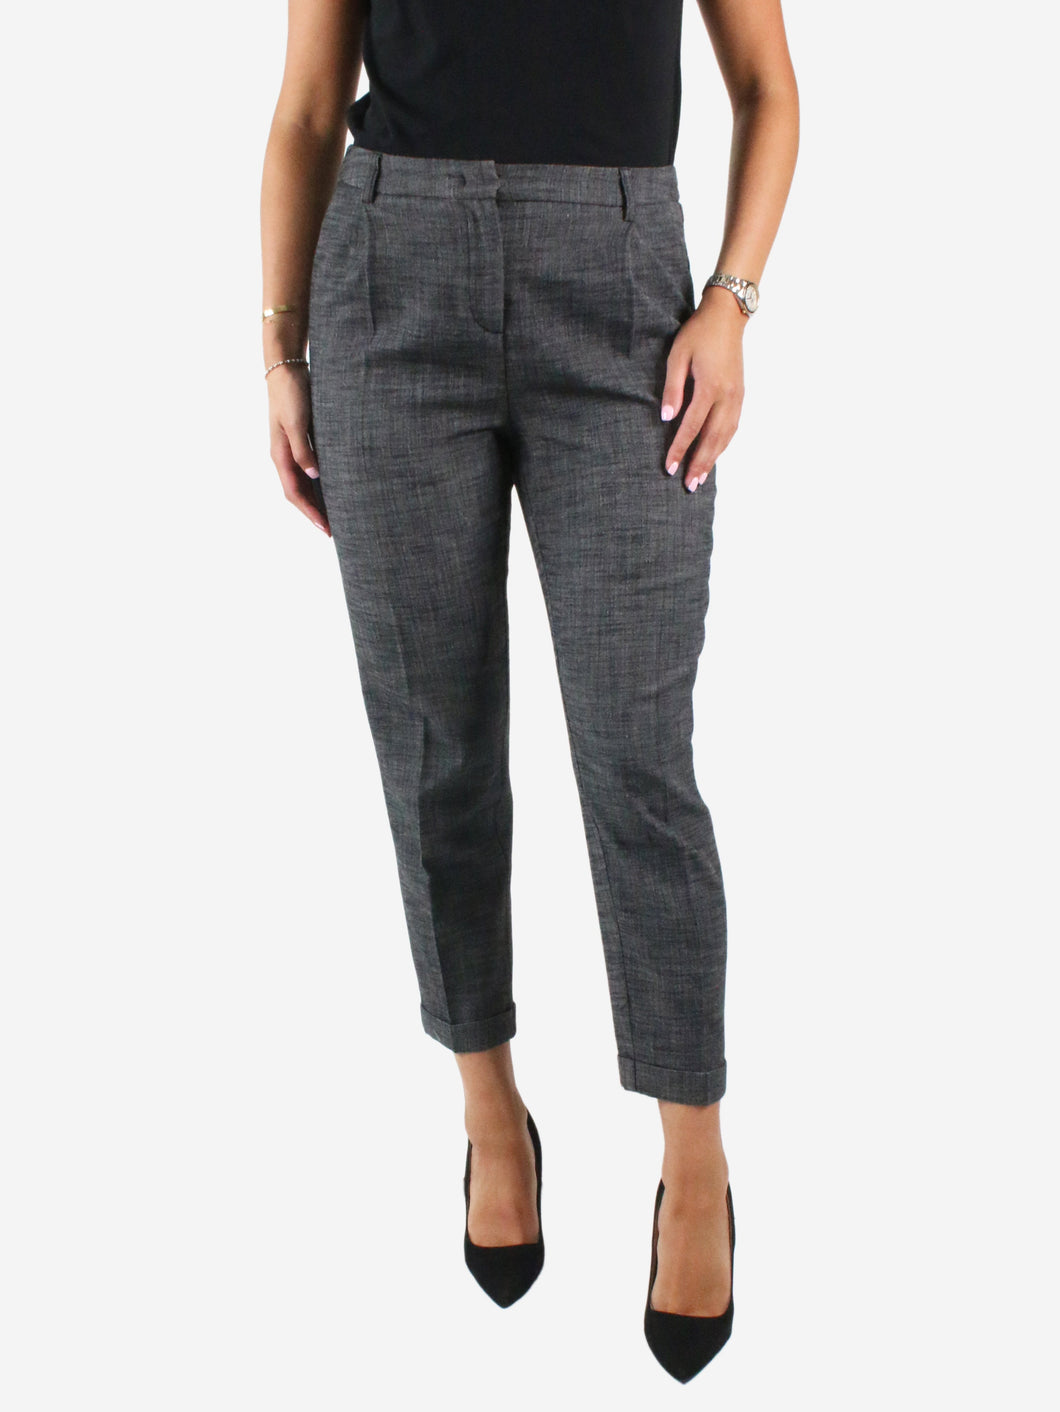 Grey pleated trousers - size EU 38 Trousers Essentiel Antwerp 